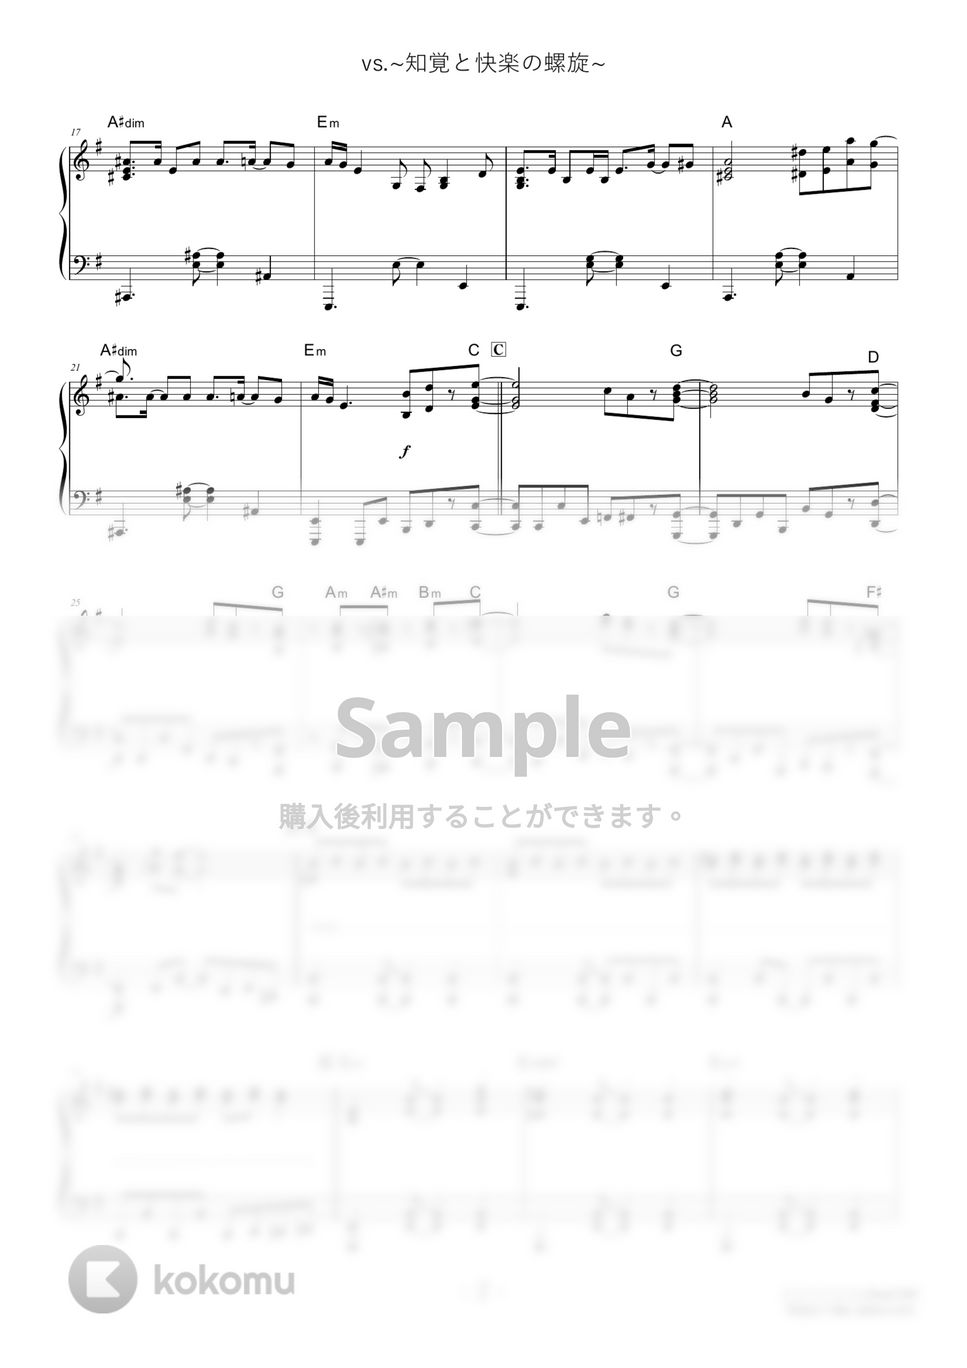 ガリレオ - VS．～知覚と快楽の螺旋～ (難易度:★★★★☆) by Dさん